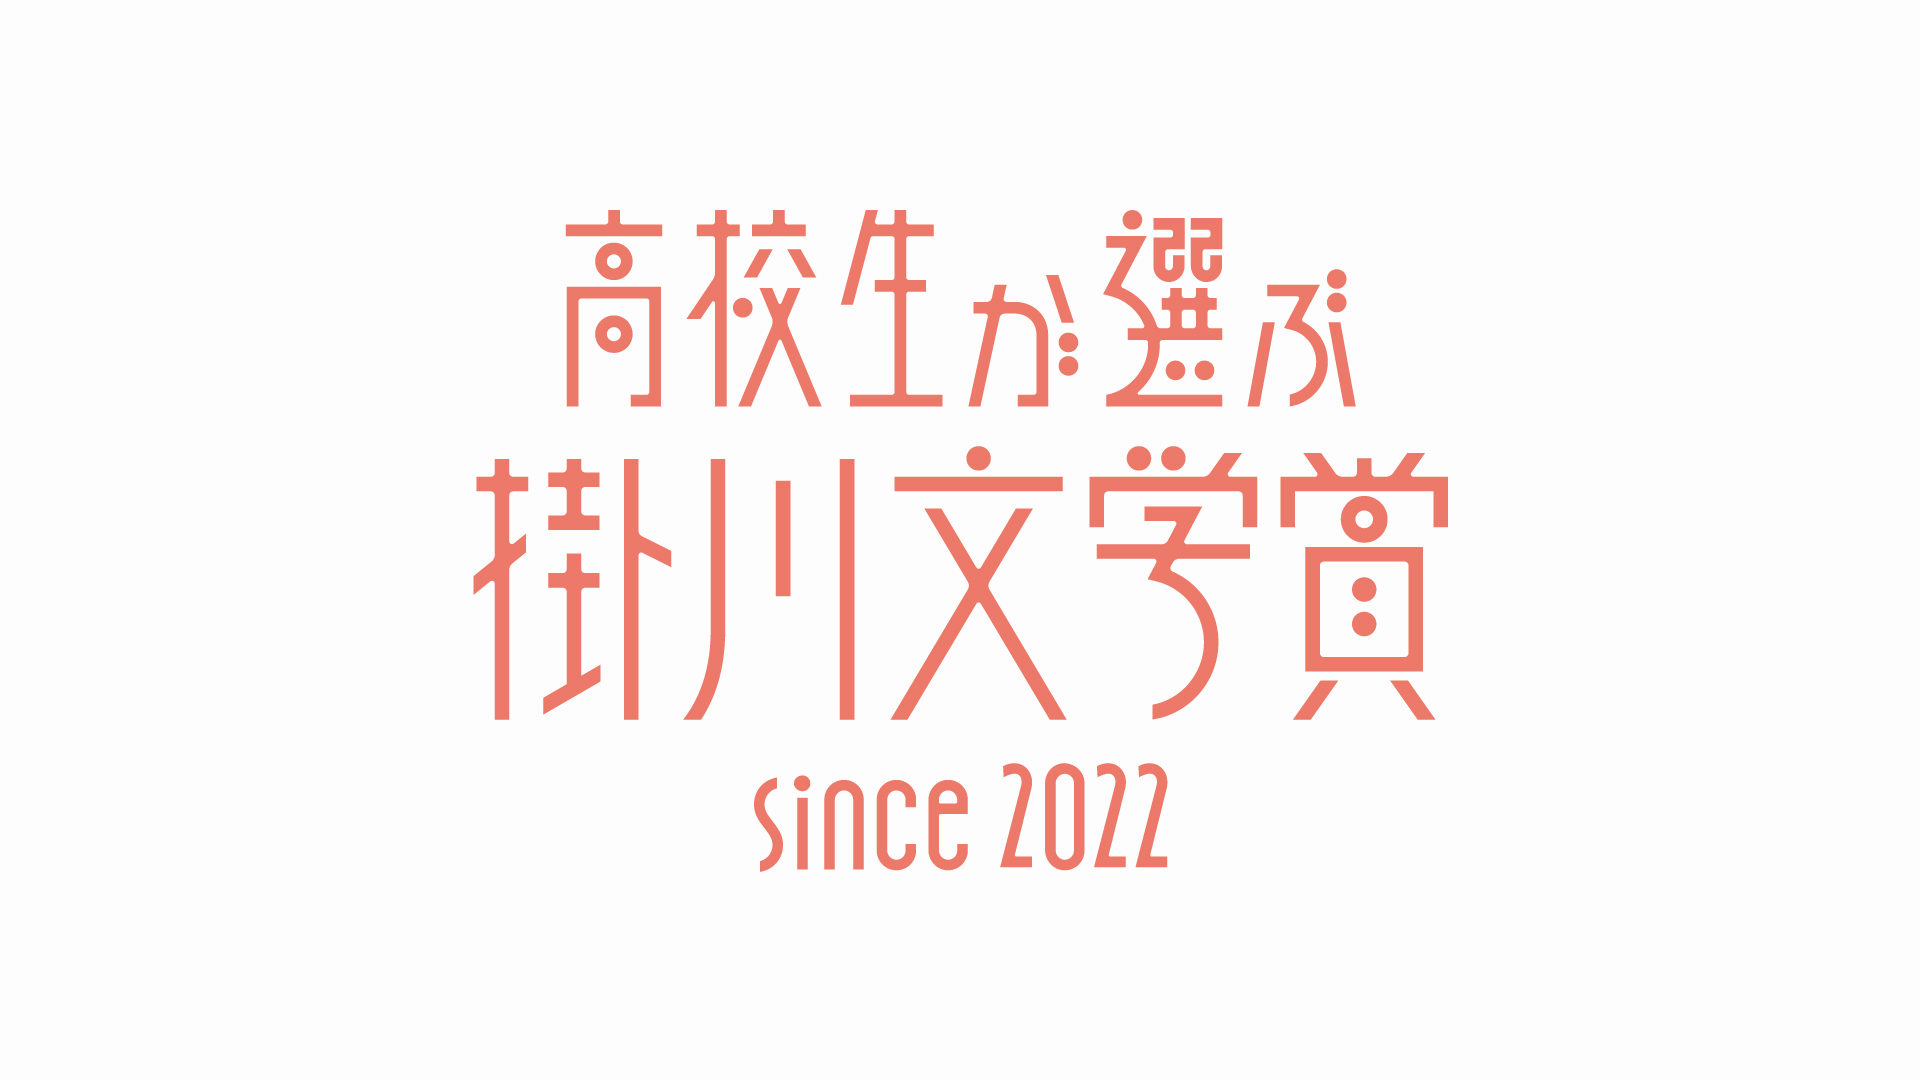 高校生が選ぶ掛川文学賞 since 2022